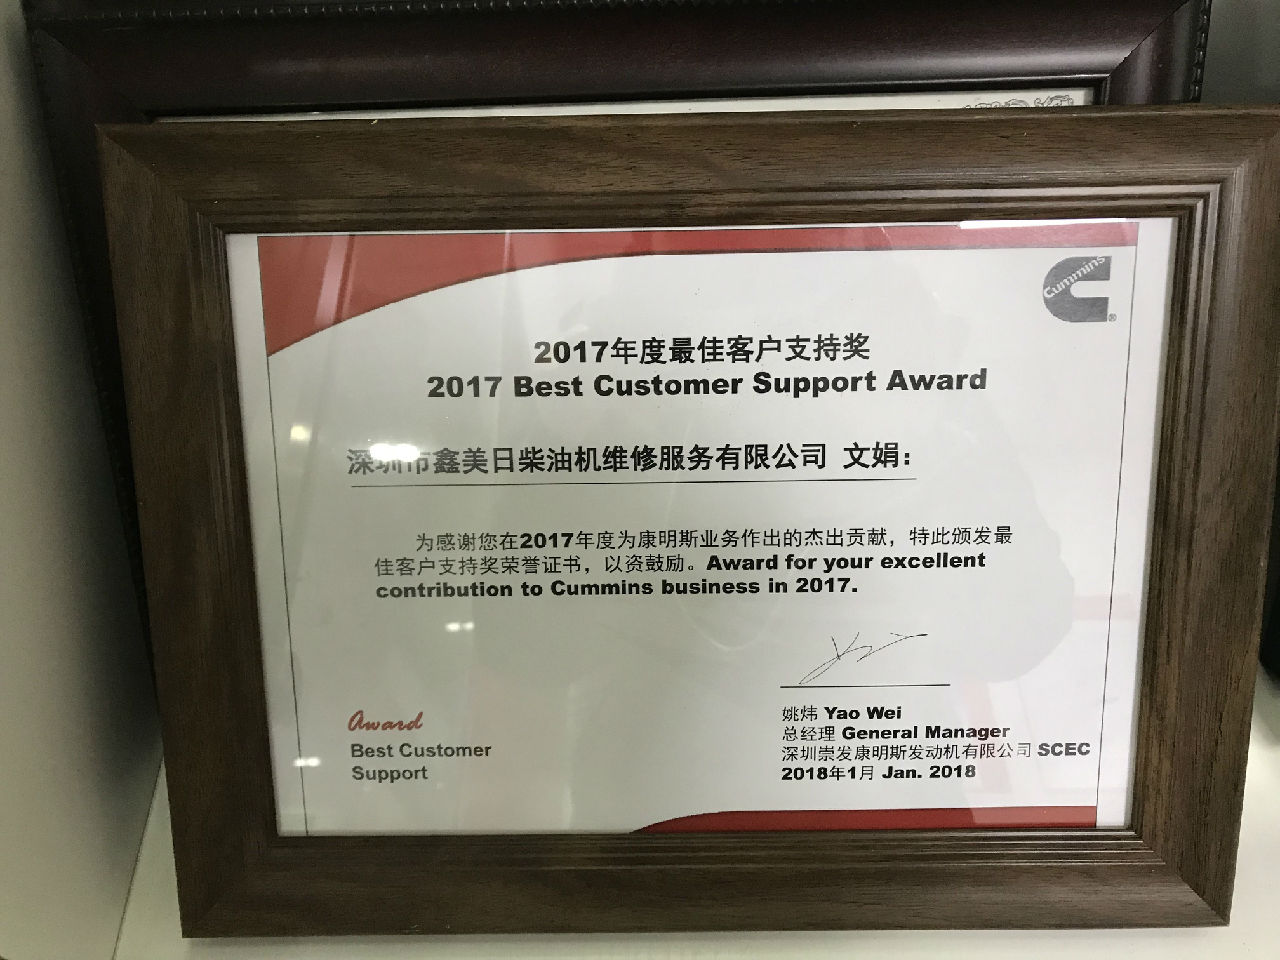 2017年度最佳客戶支持獎 文娟_c